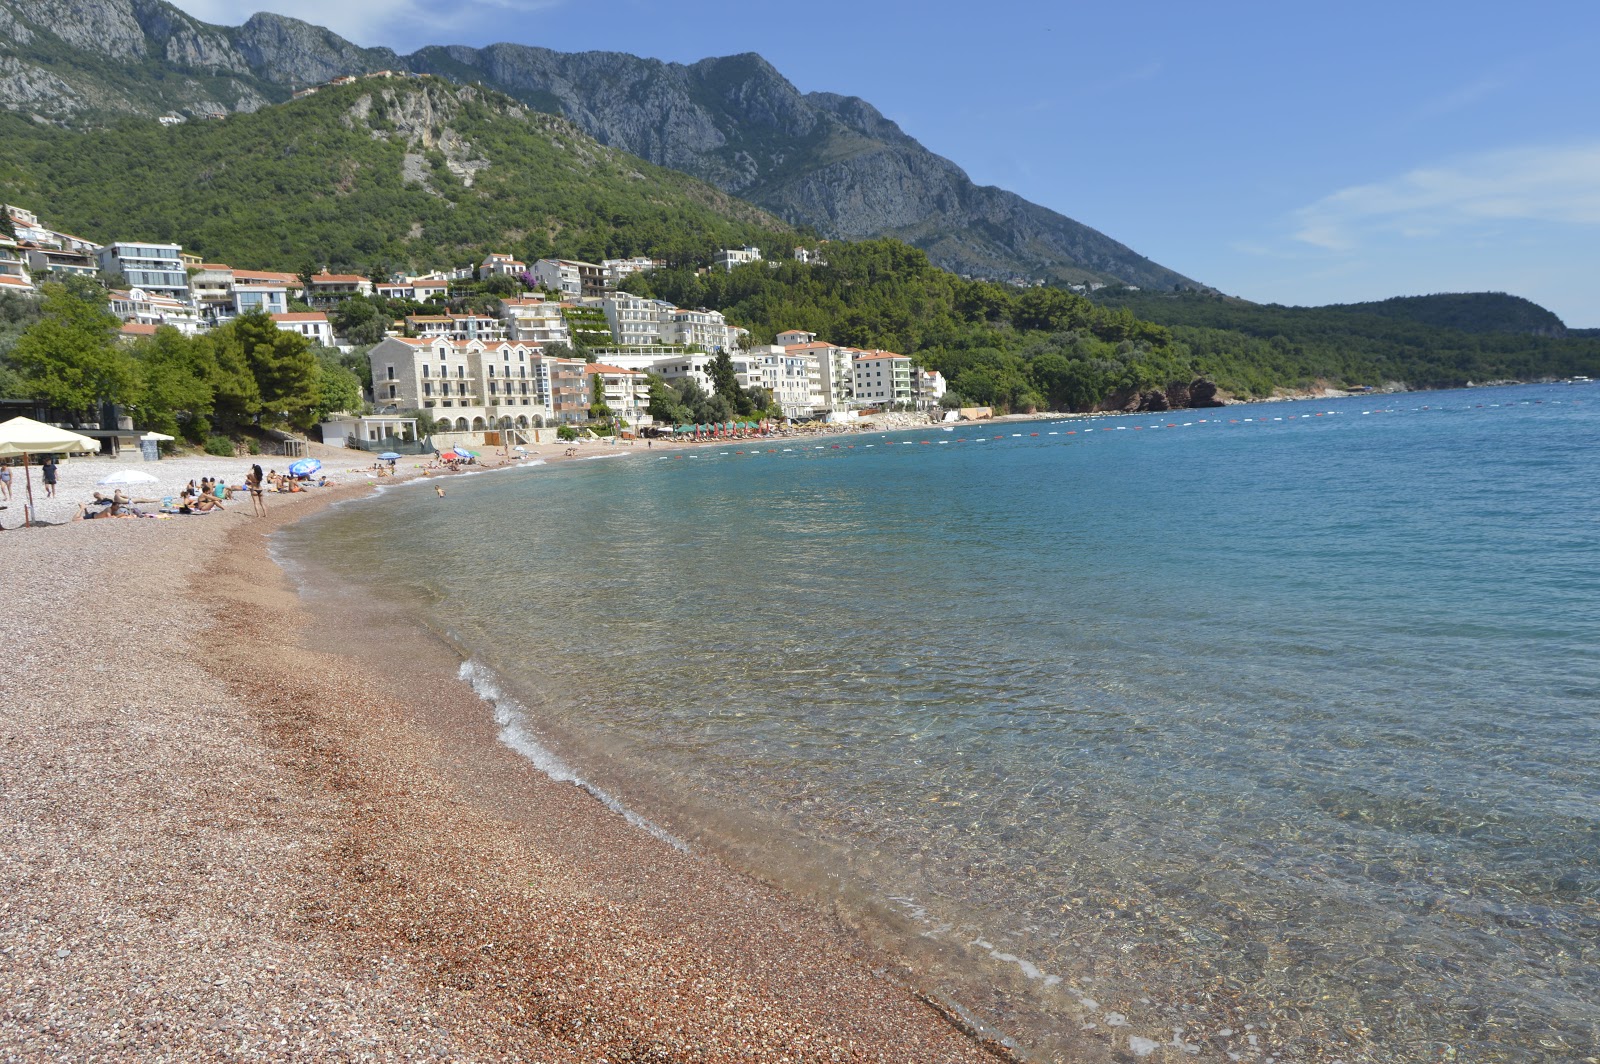 Foto af Sveti Stefan beach - populært sted blandt afslapningskendere